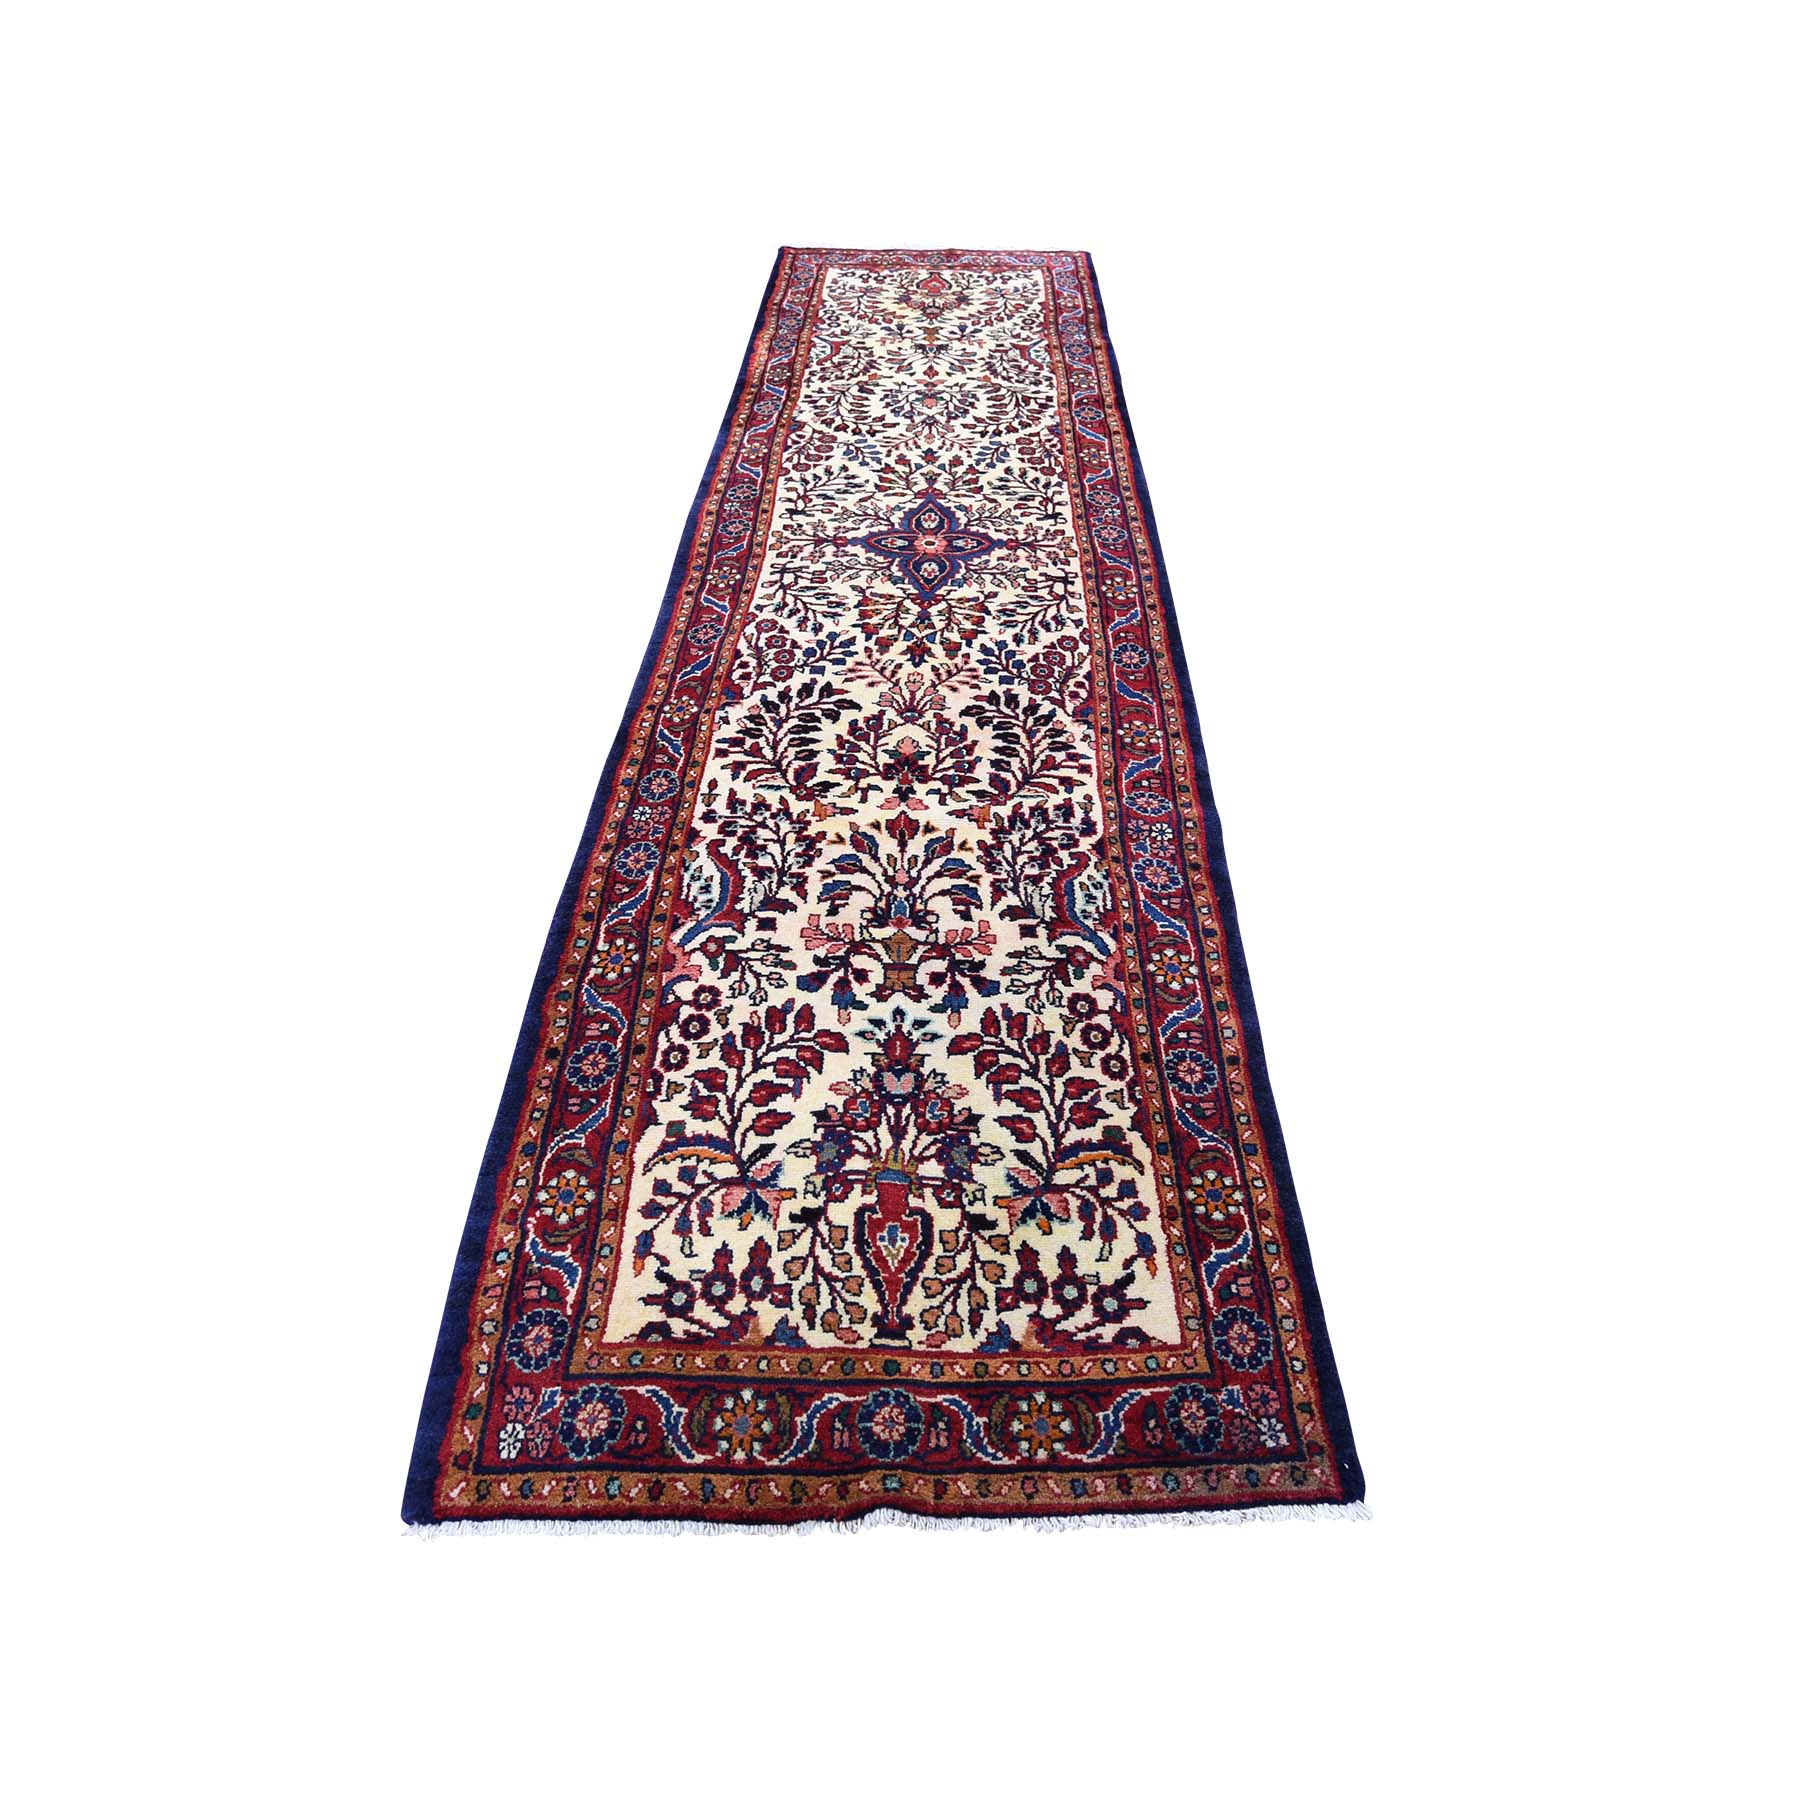 2'8"x11' New Persian Lilihan Runner Hand Woven Oriental Oriental Rug 